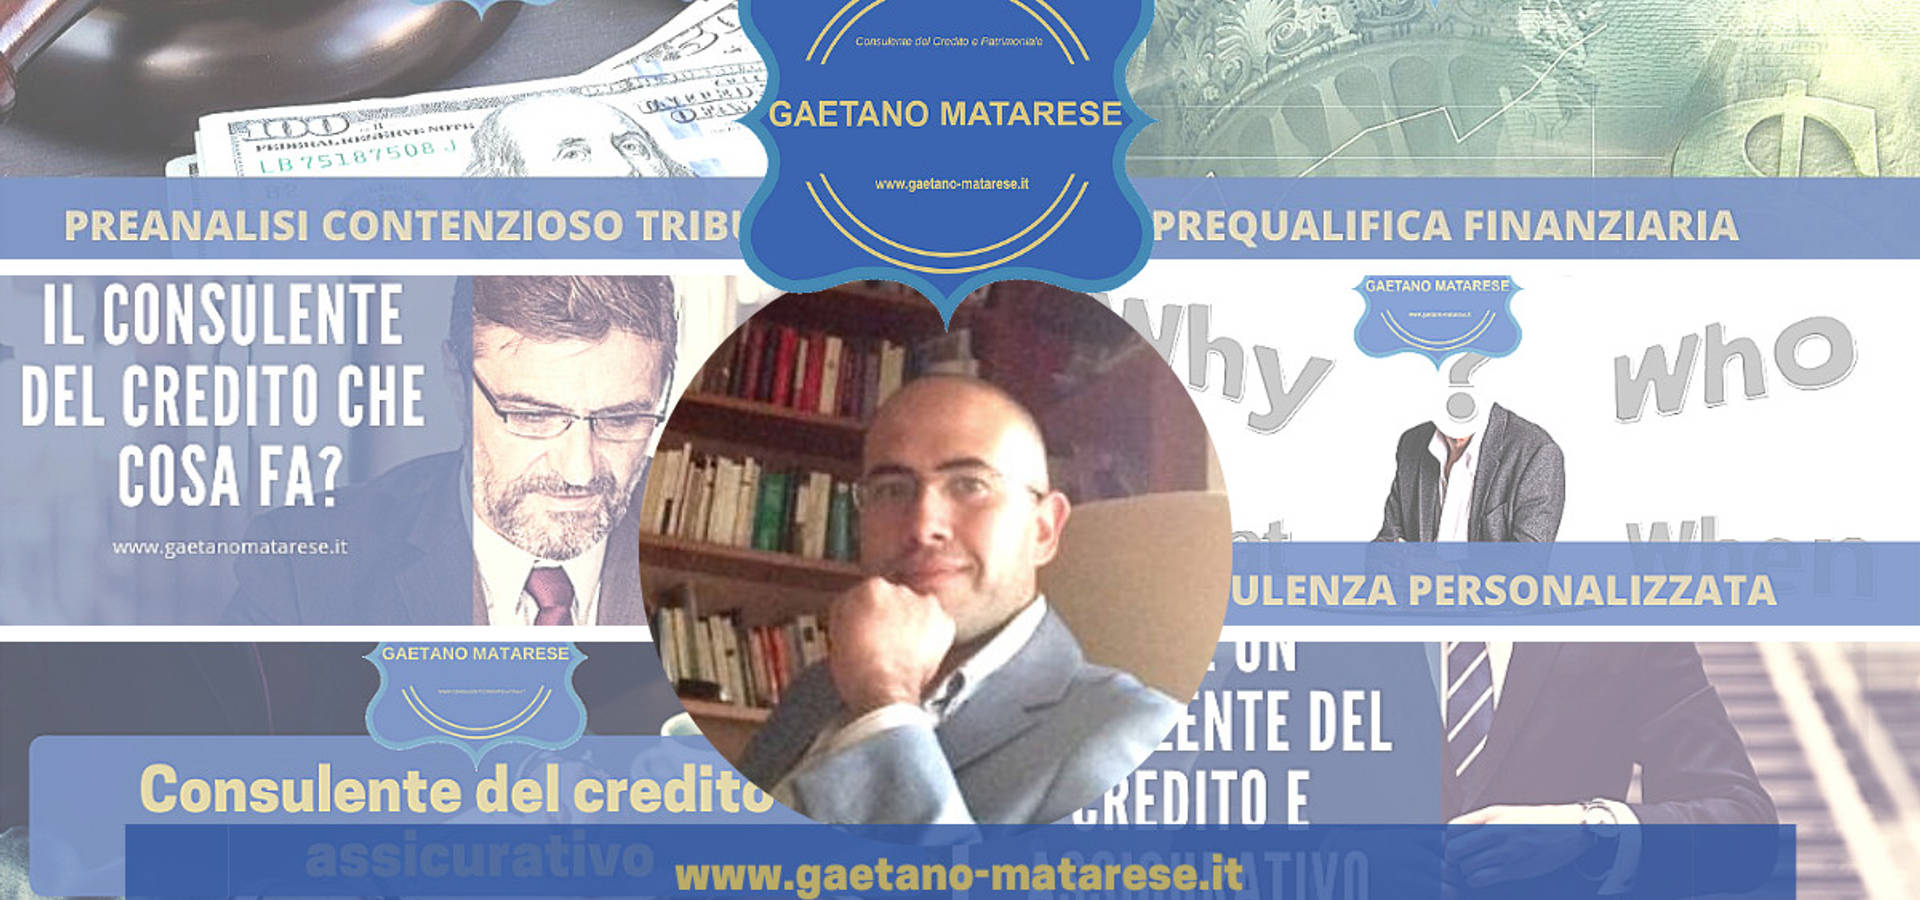 Gaetano Matarese Consulente del Credito e Patrimoniale